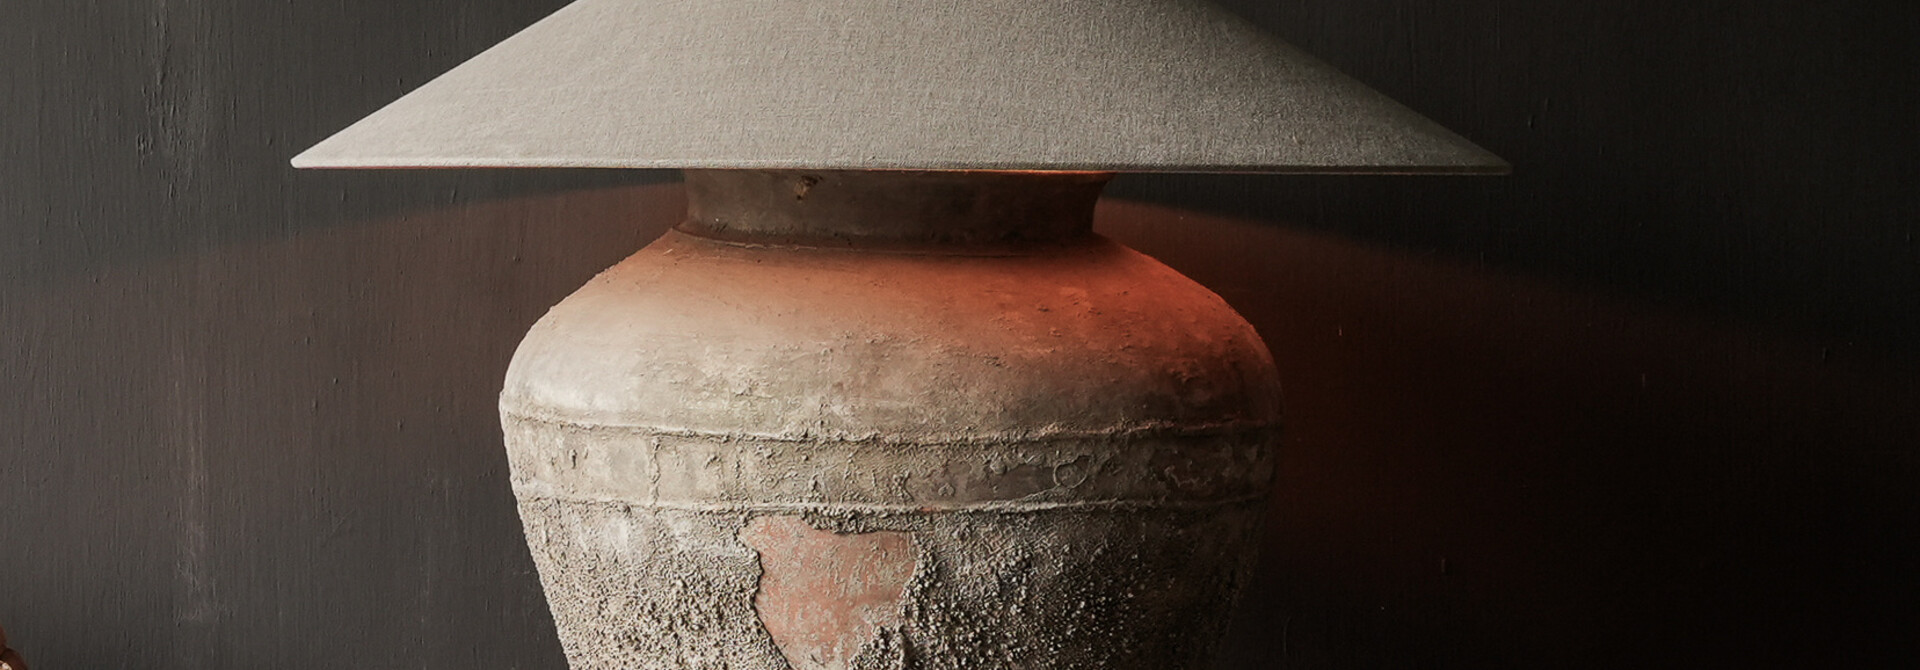 Kruglampe aus altem authentischem Wassertopf